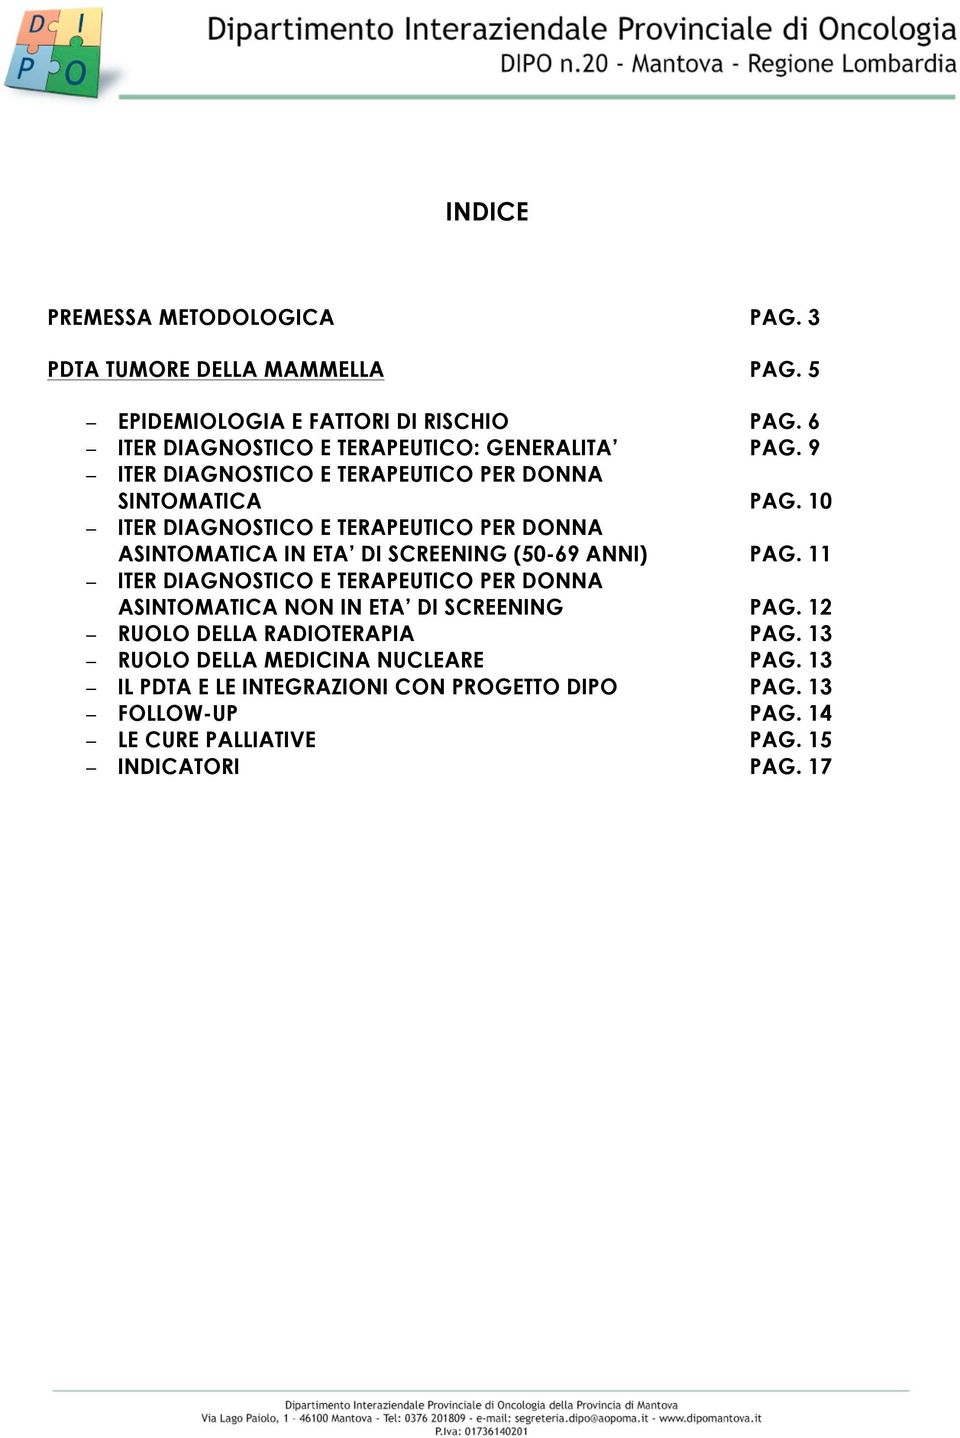 10 ITER DIAGNOSTICO E TERAPEUTICO PER DONNA ASINTOMATICA IN ETA DI SCREENING (50-69 ANNI) PAG.